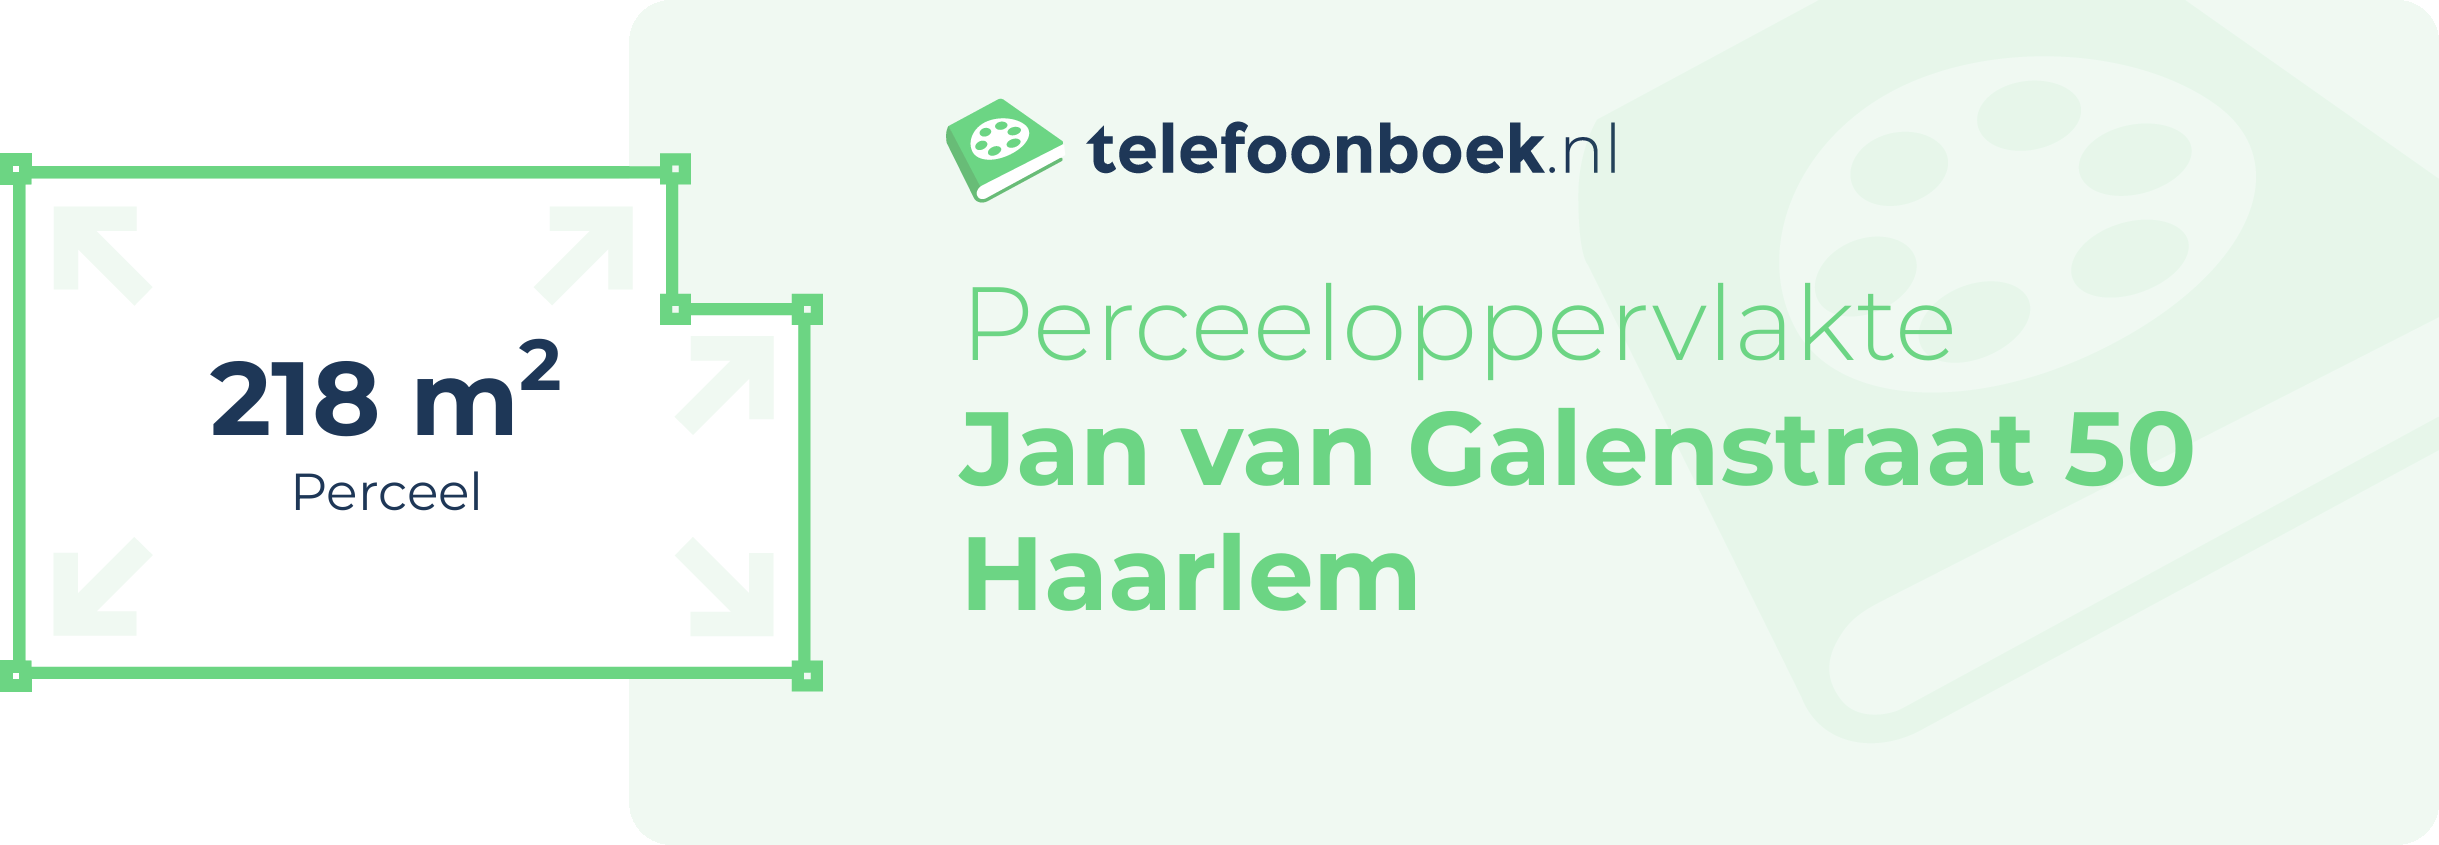 Perceeloppervlakte Jan Van Galenstraat 50 Haarlem